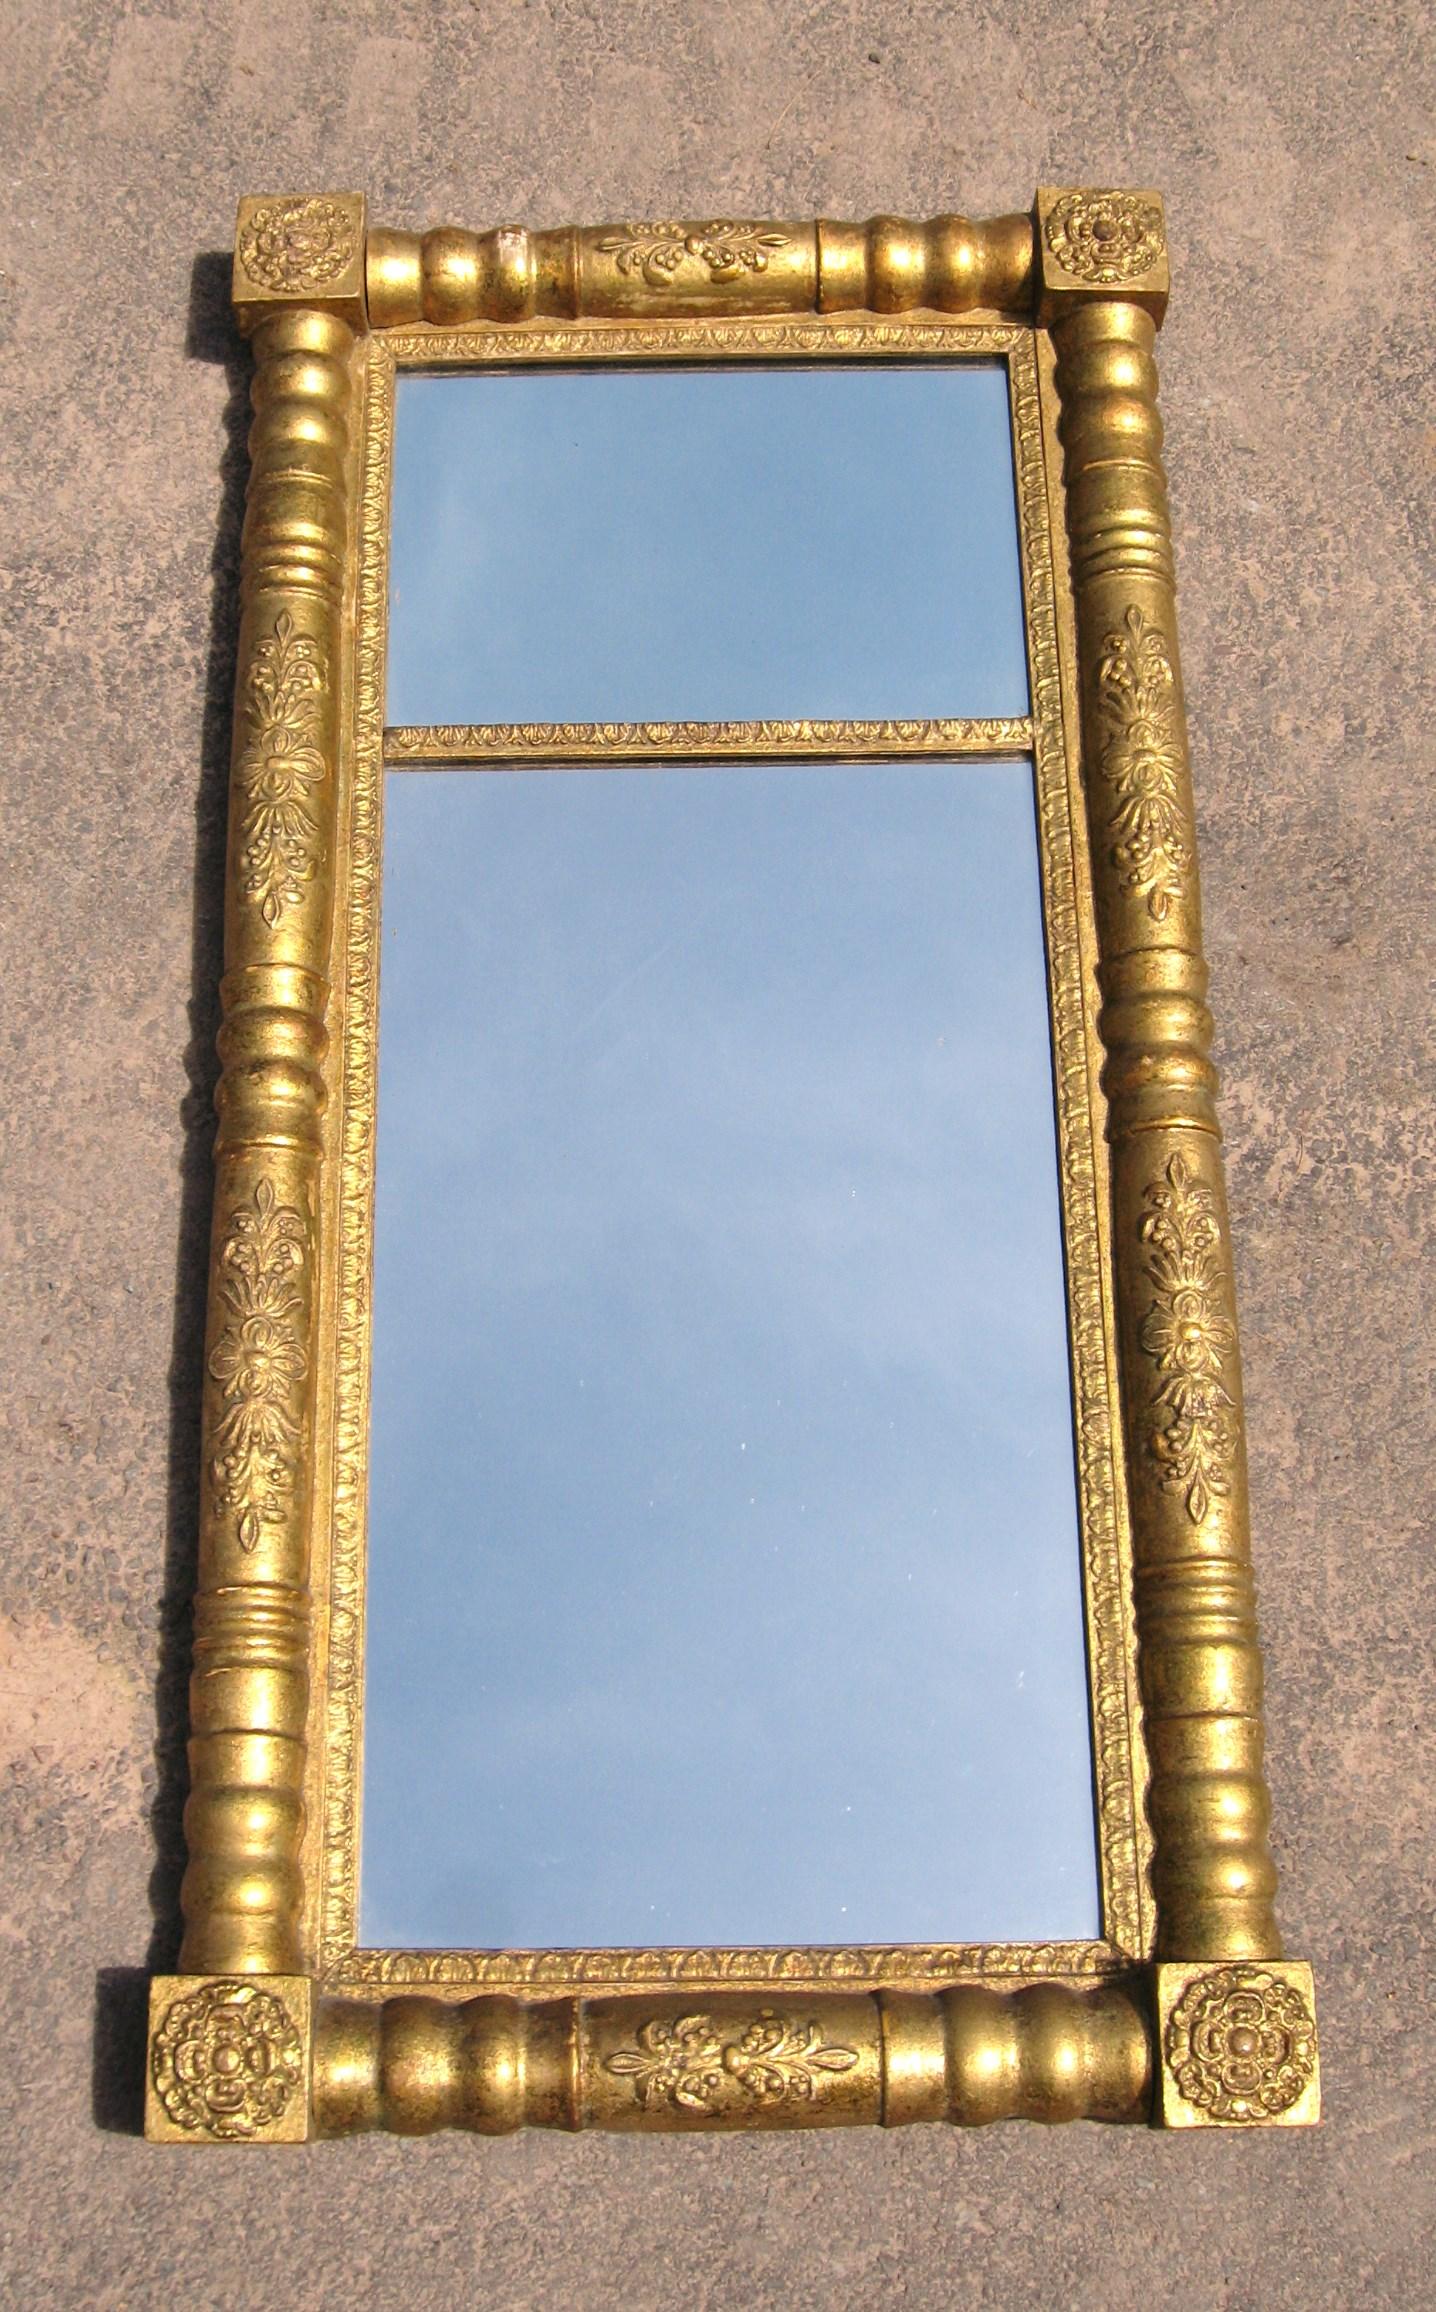 Wunderschöner zweiteiliger Spiegel im neoklassizistischen Stil mit Blattvergoldung, der den ursprünglichen Spiegel und die Vergoldung beibehält. Messen 22 Zoll breit x 43 3/8 Zoll hoch x 2 3/4 Zoll tief, Abschnitt Größen sind 14 in breit x 9 5/8 in